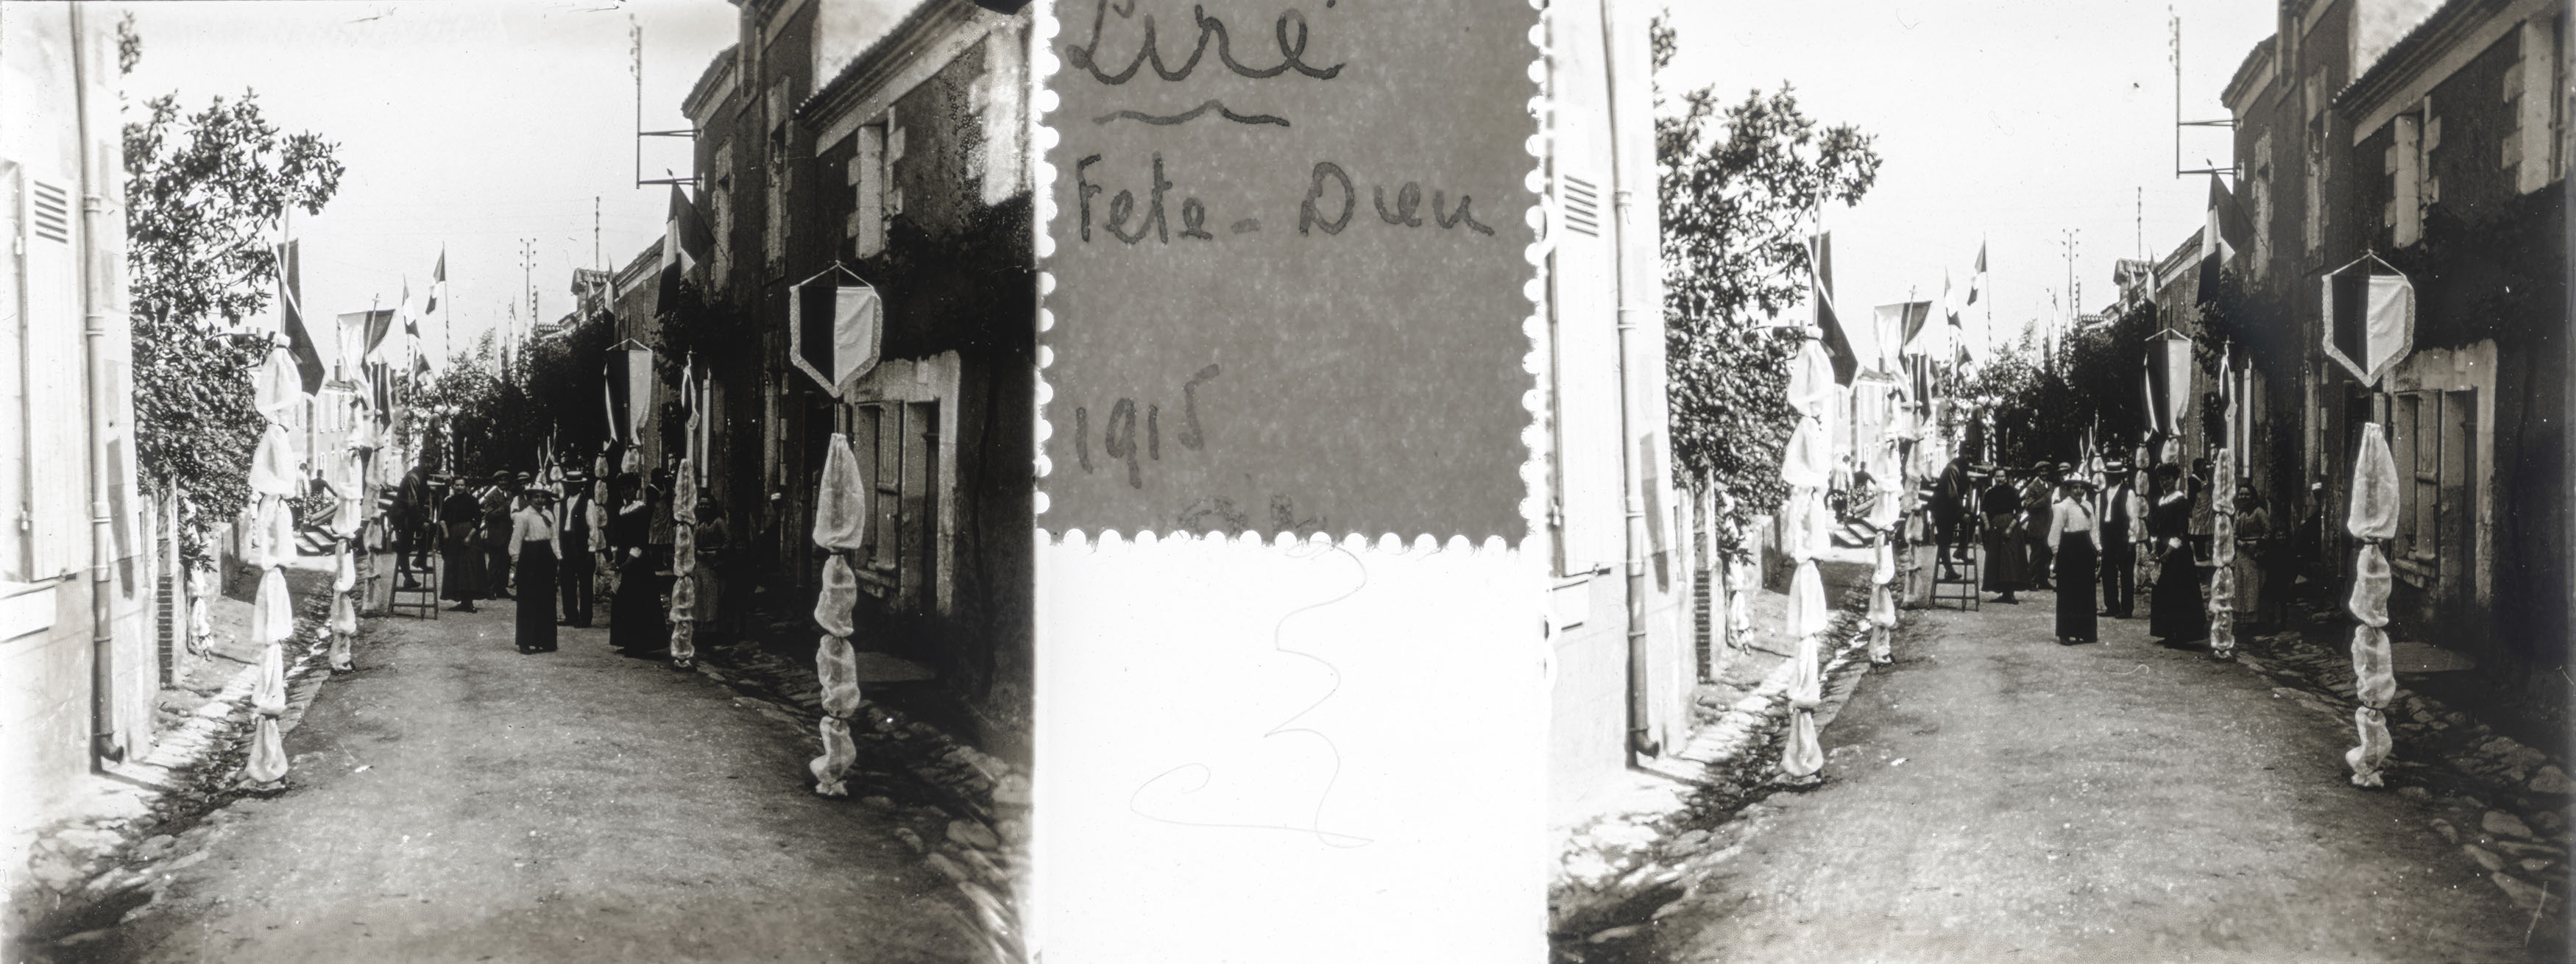 Liré, Fête-Dieu 1915 (Corpus Christi)